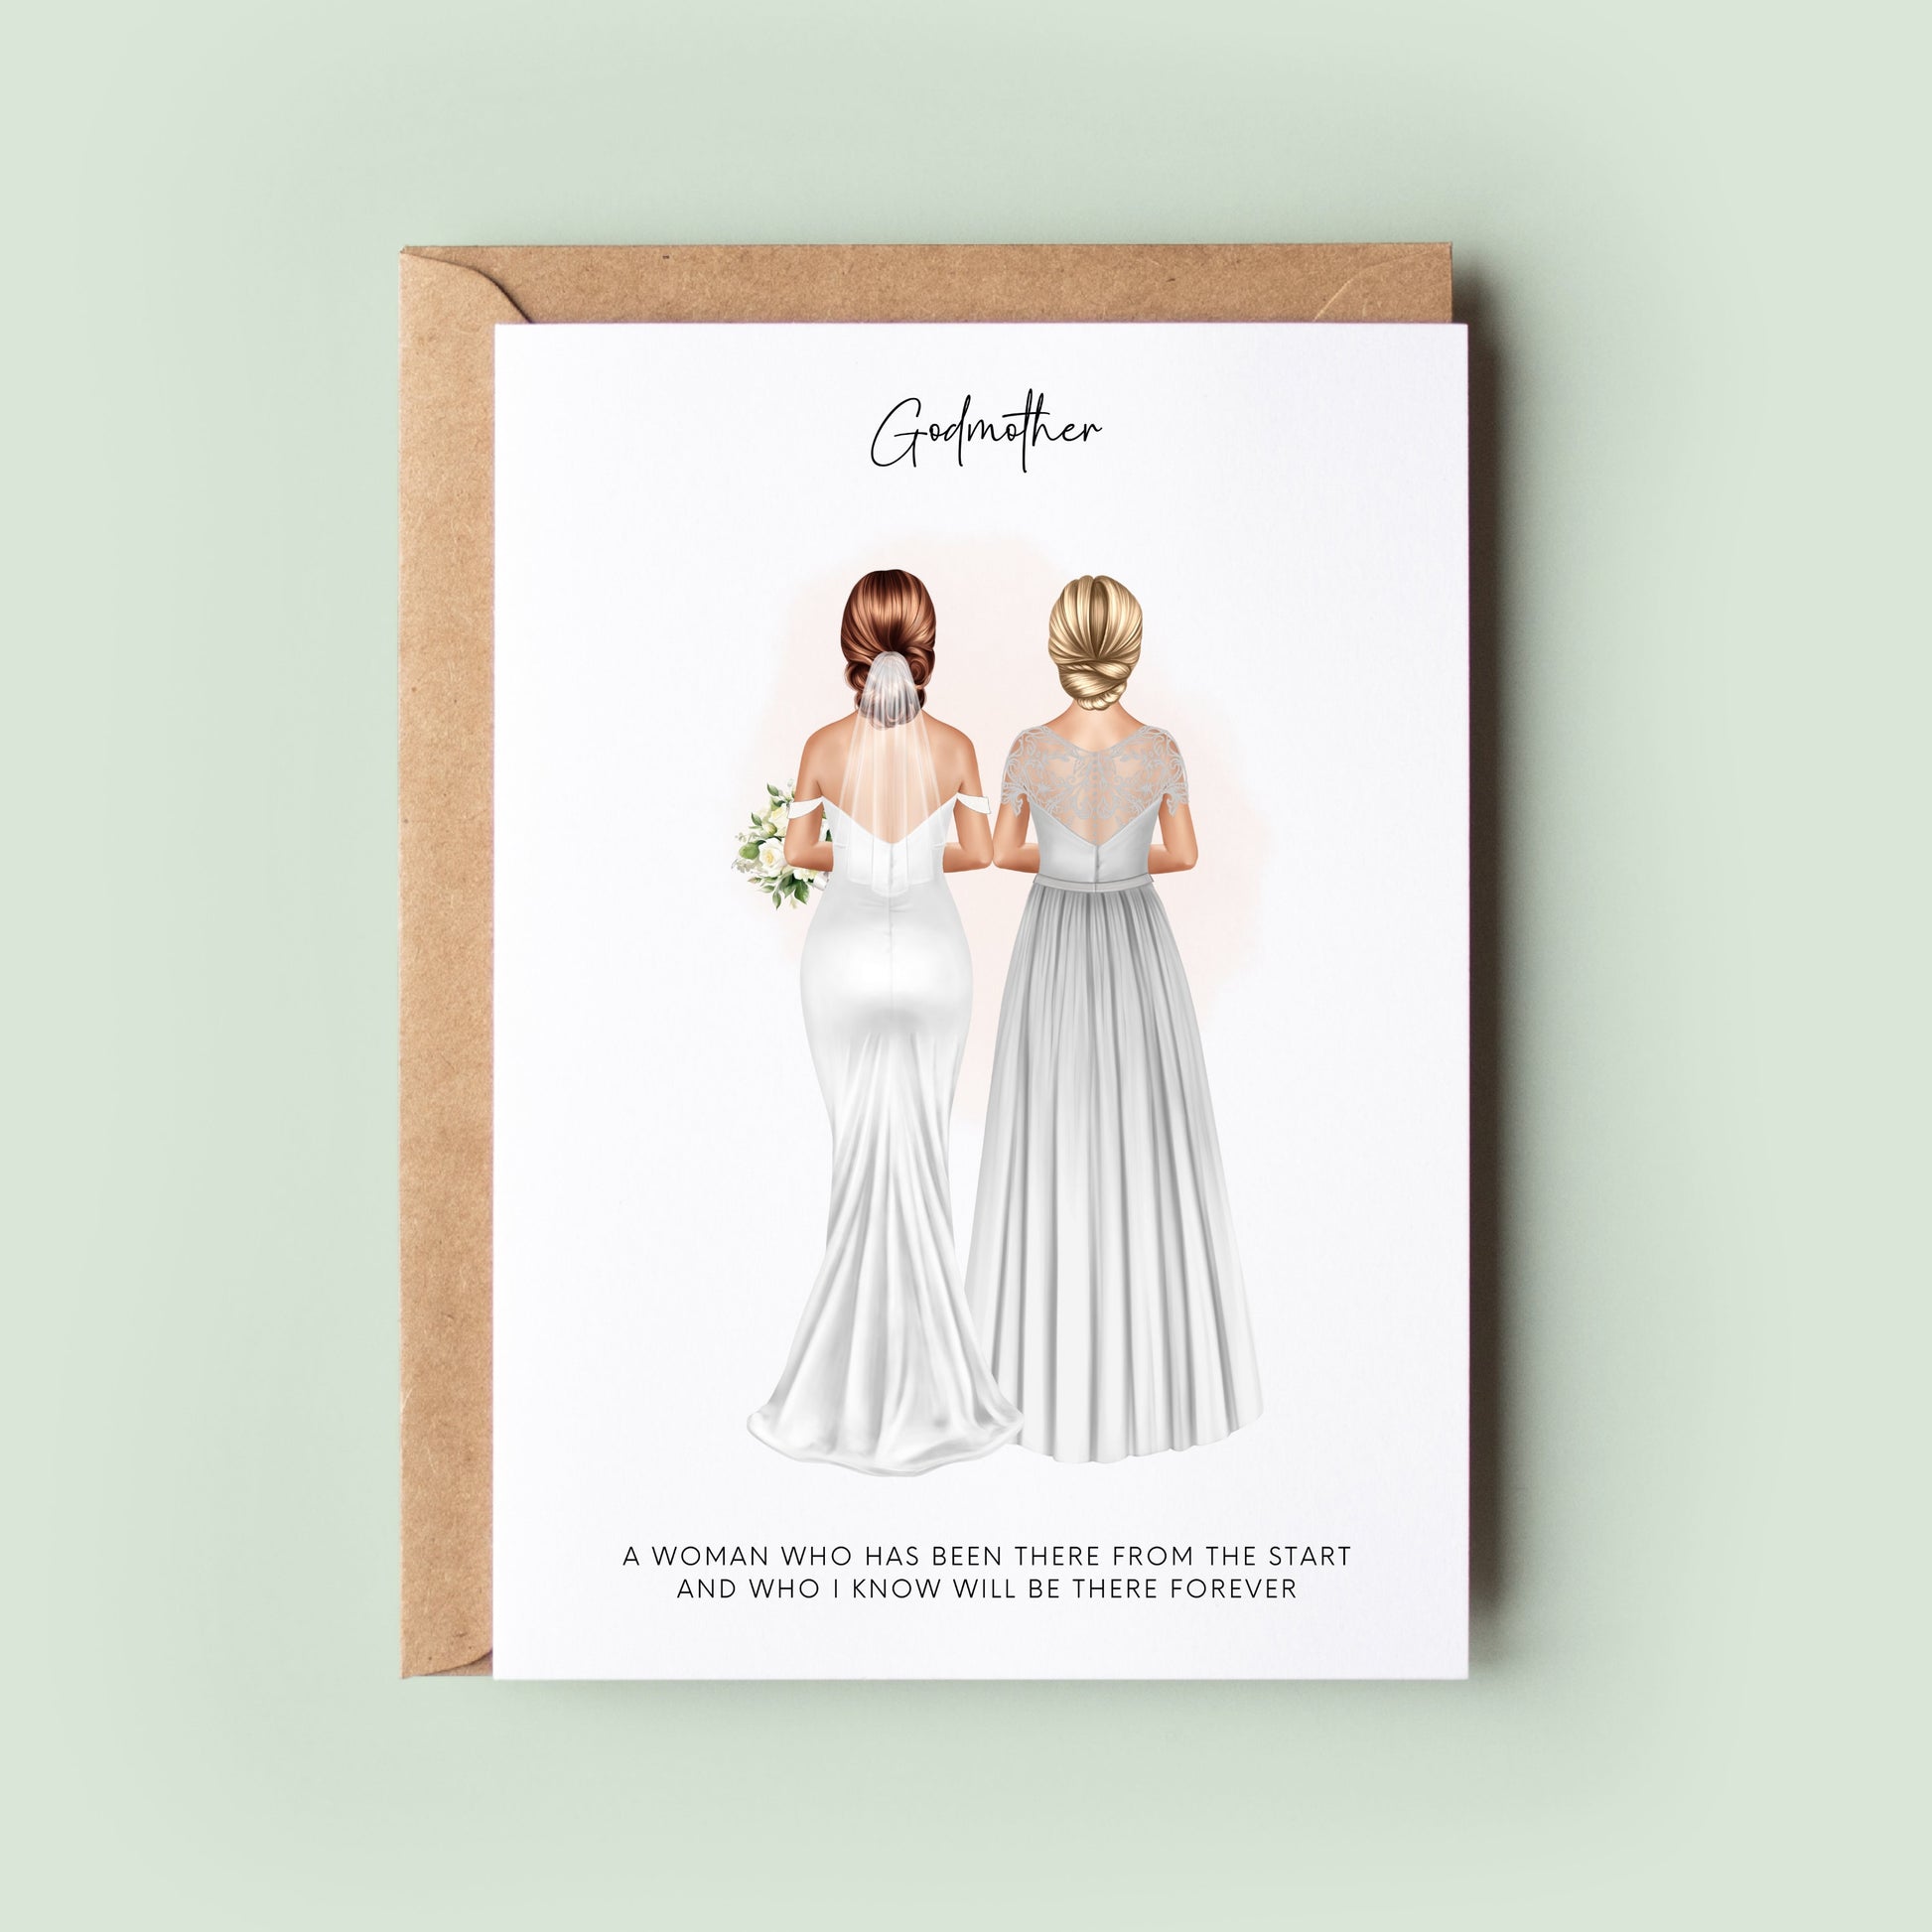 Personalised Godmother Wedding Thank You Card - Elegant To My Godmother on My Wedding Day Keepsake, Custom Illustrated Card